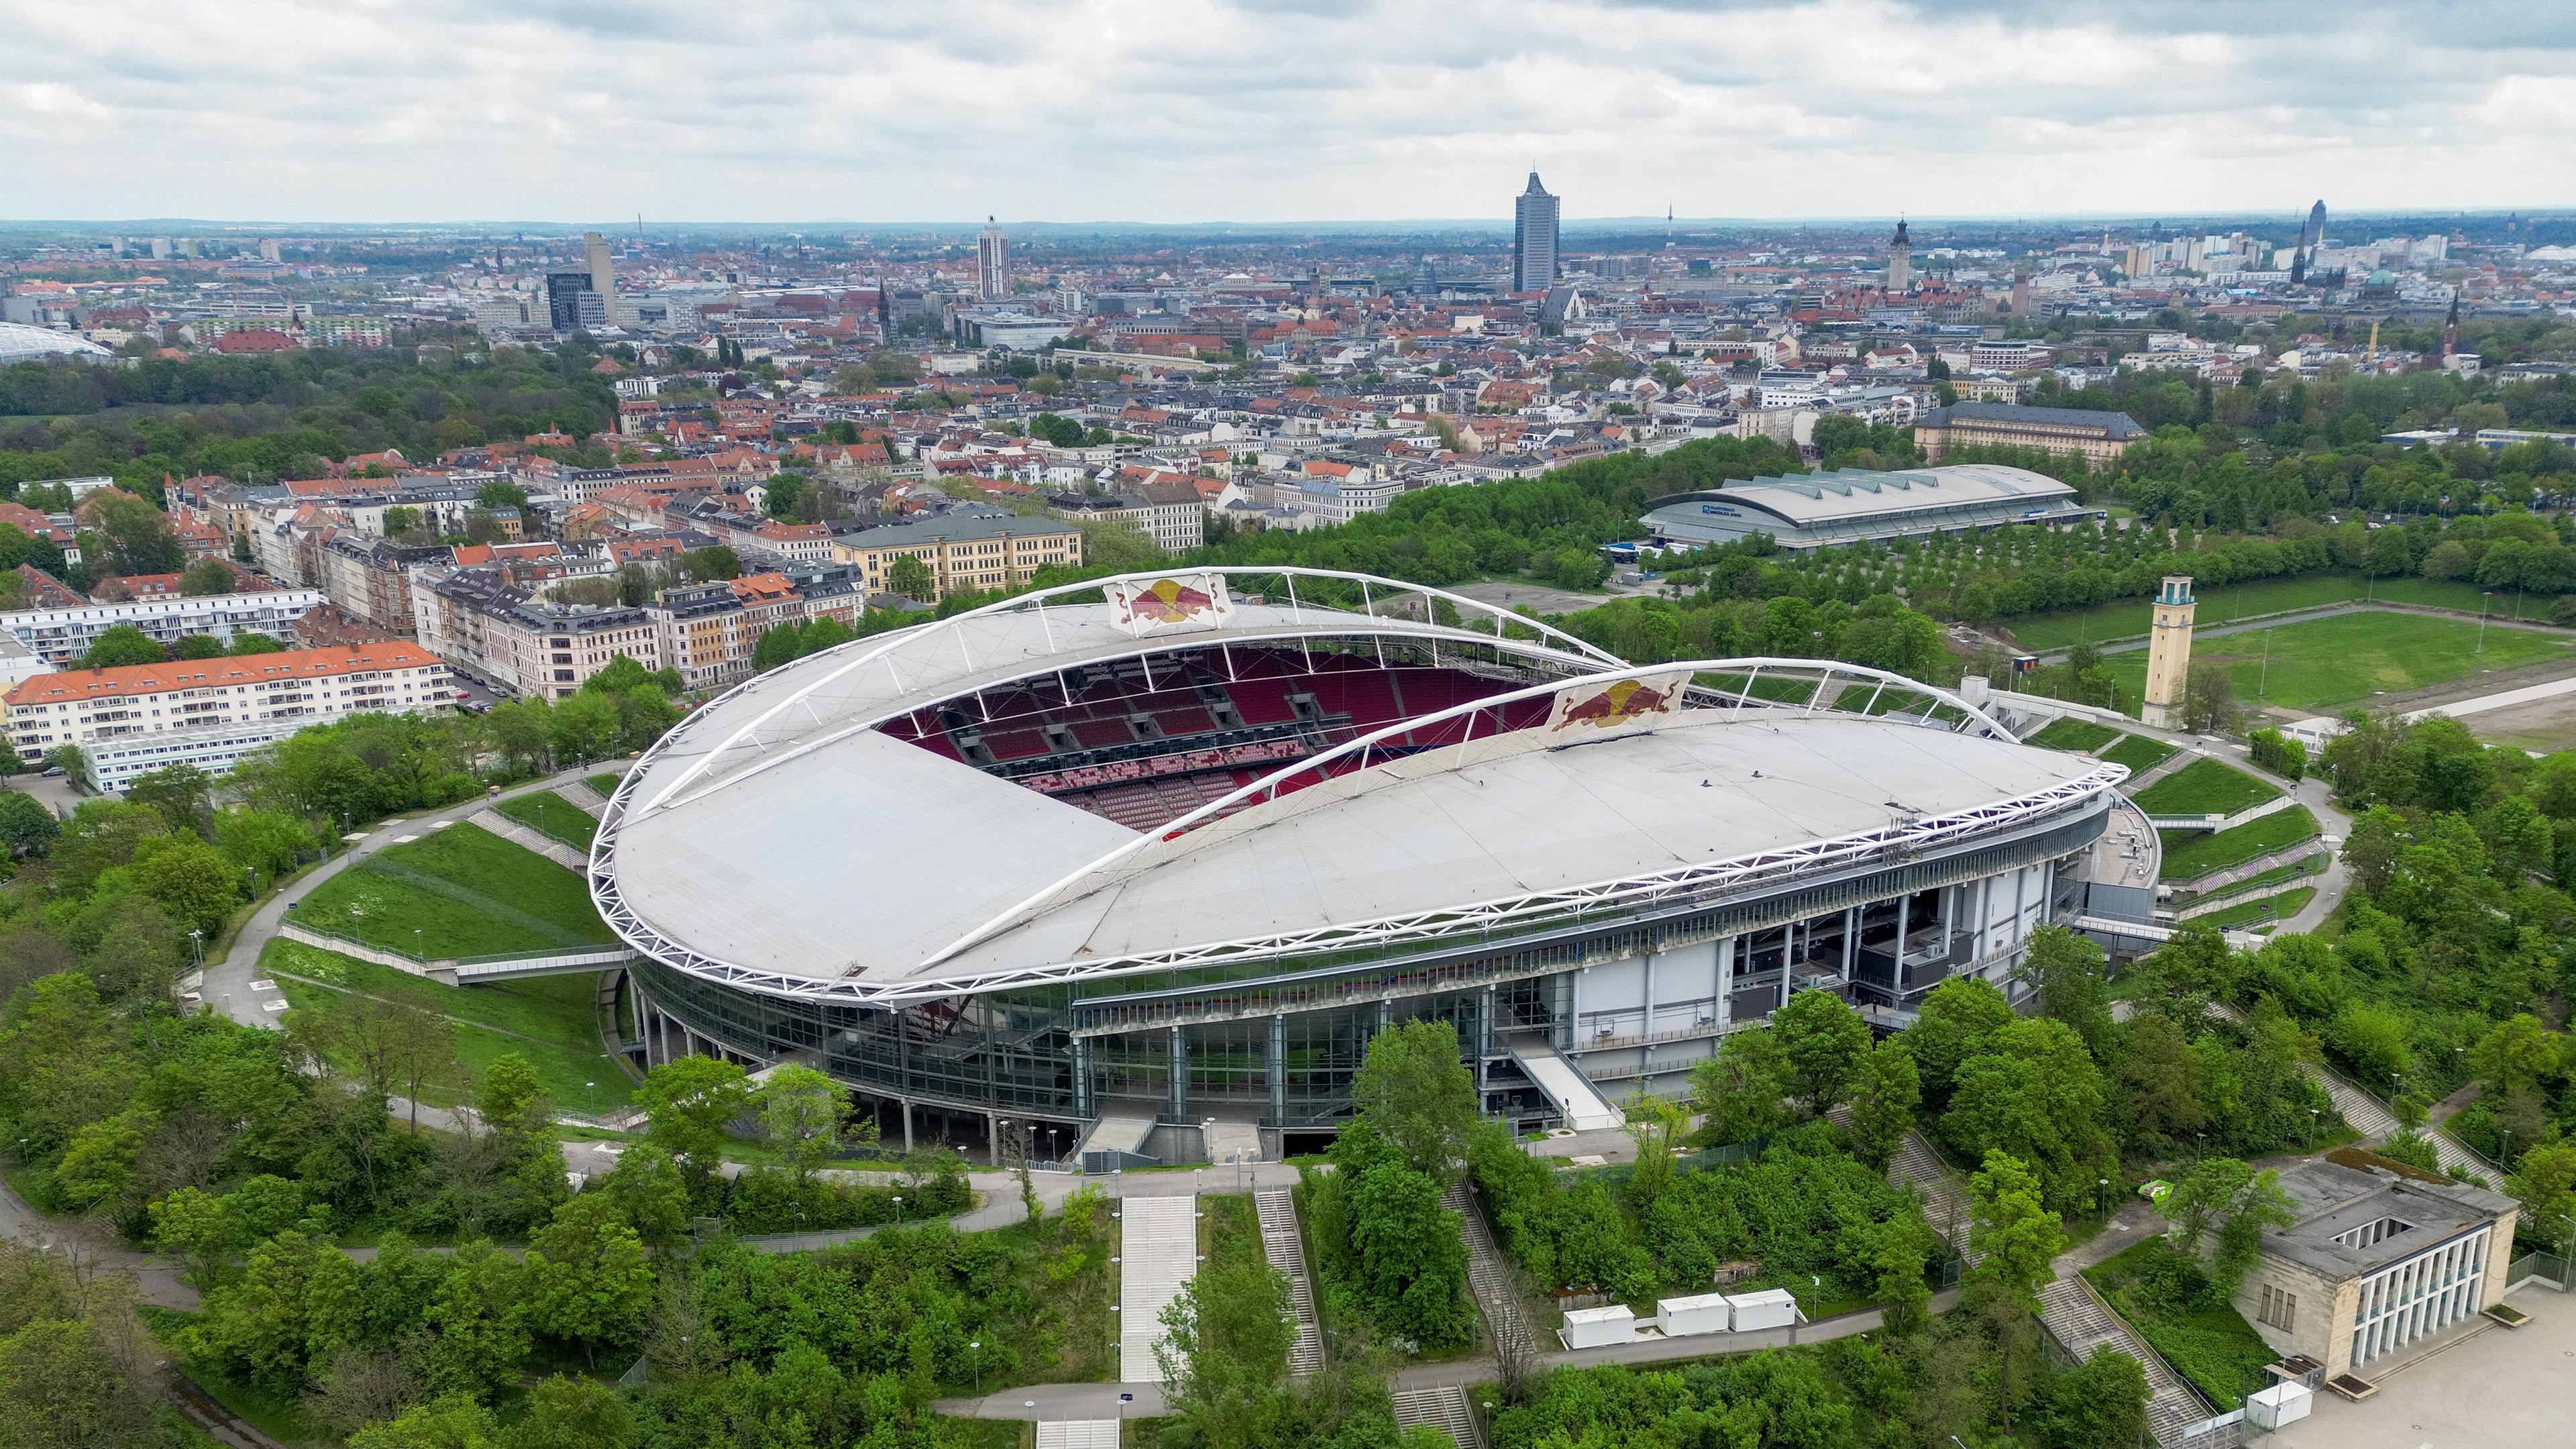 Das Stadion des RB Leipzig ist aus der Vogelperspektive zu sehen.